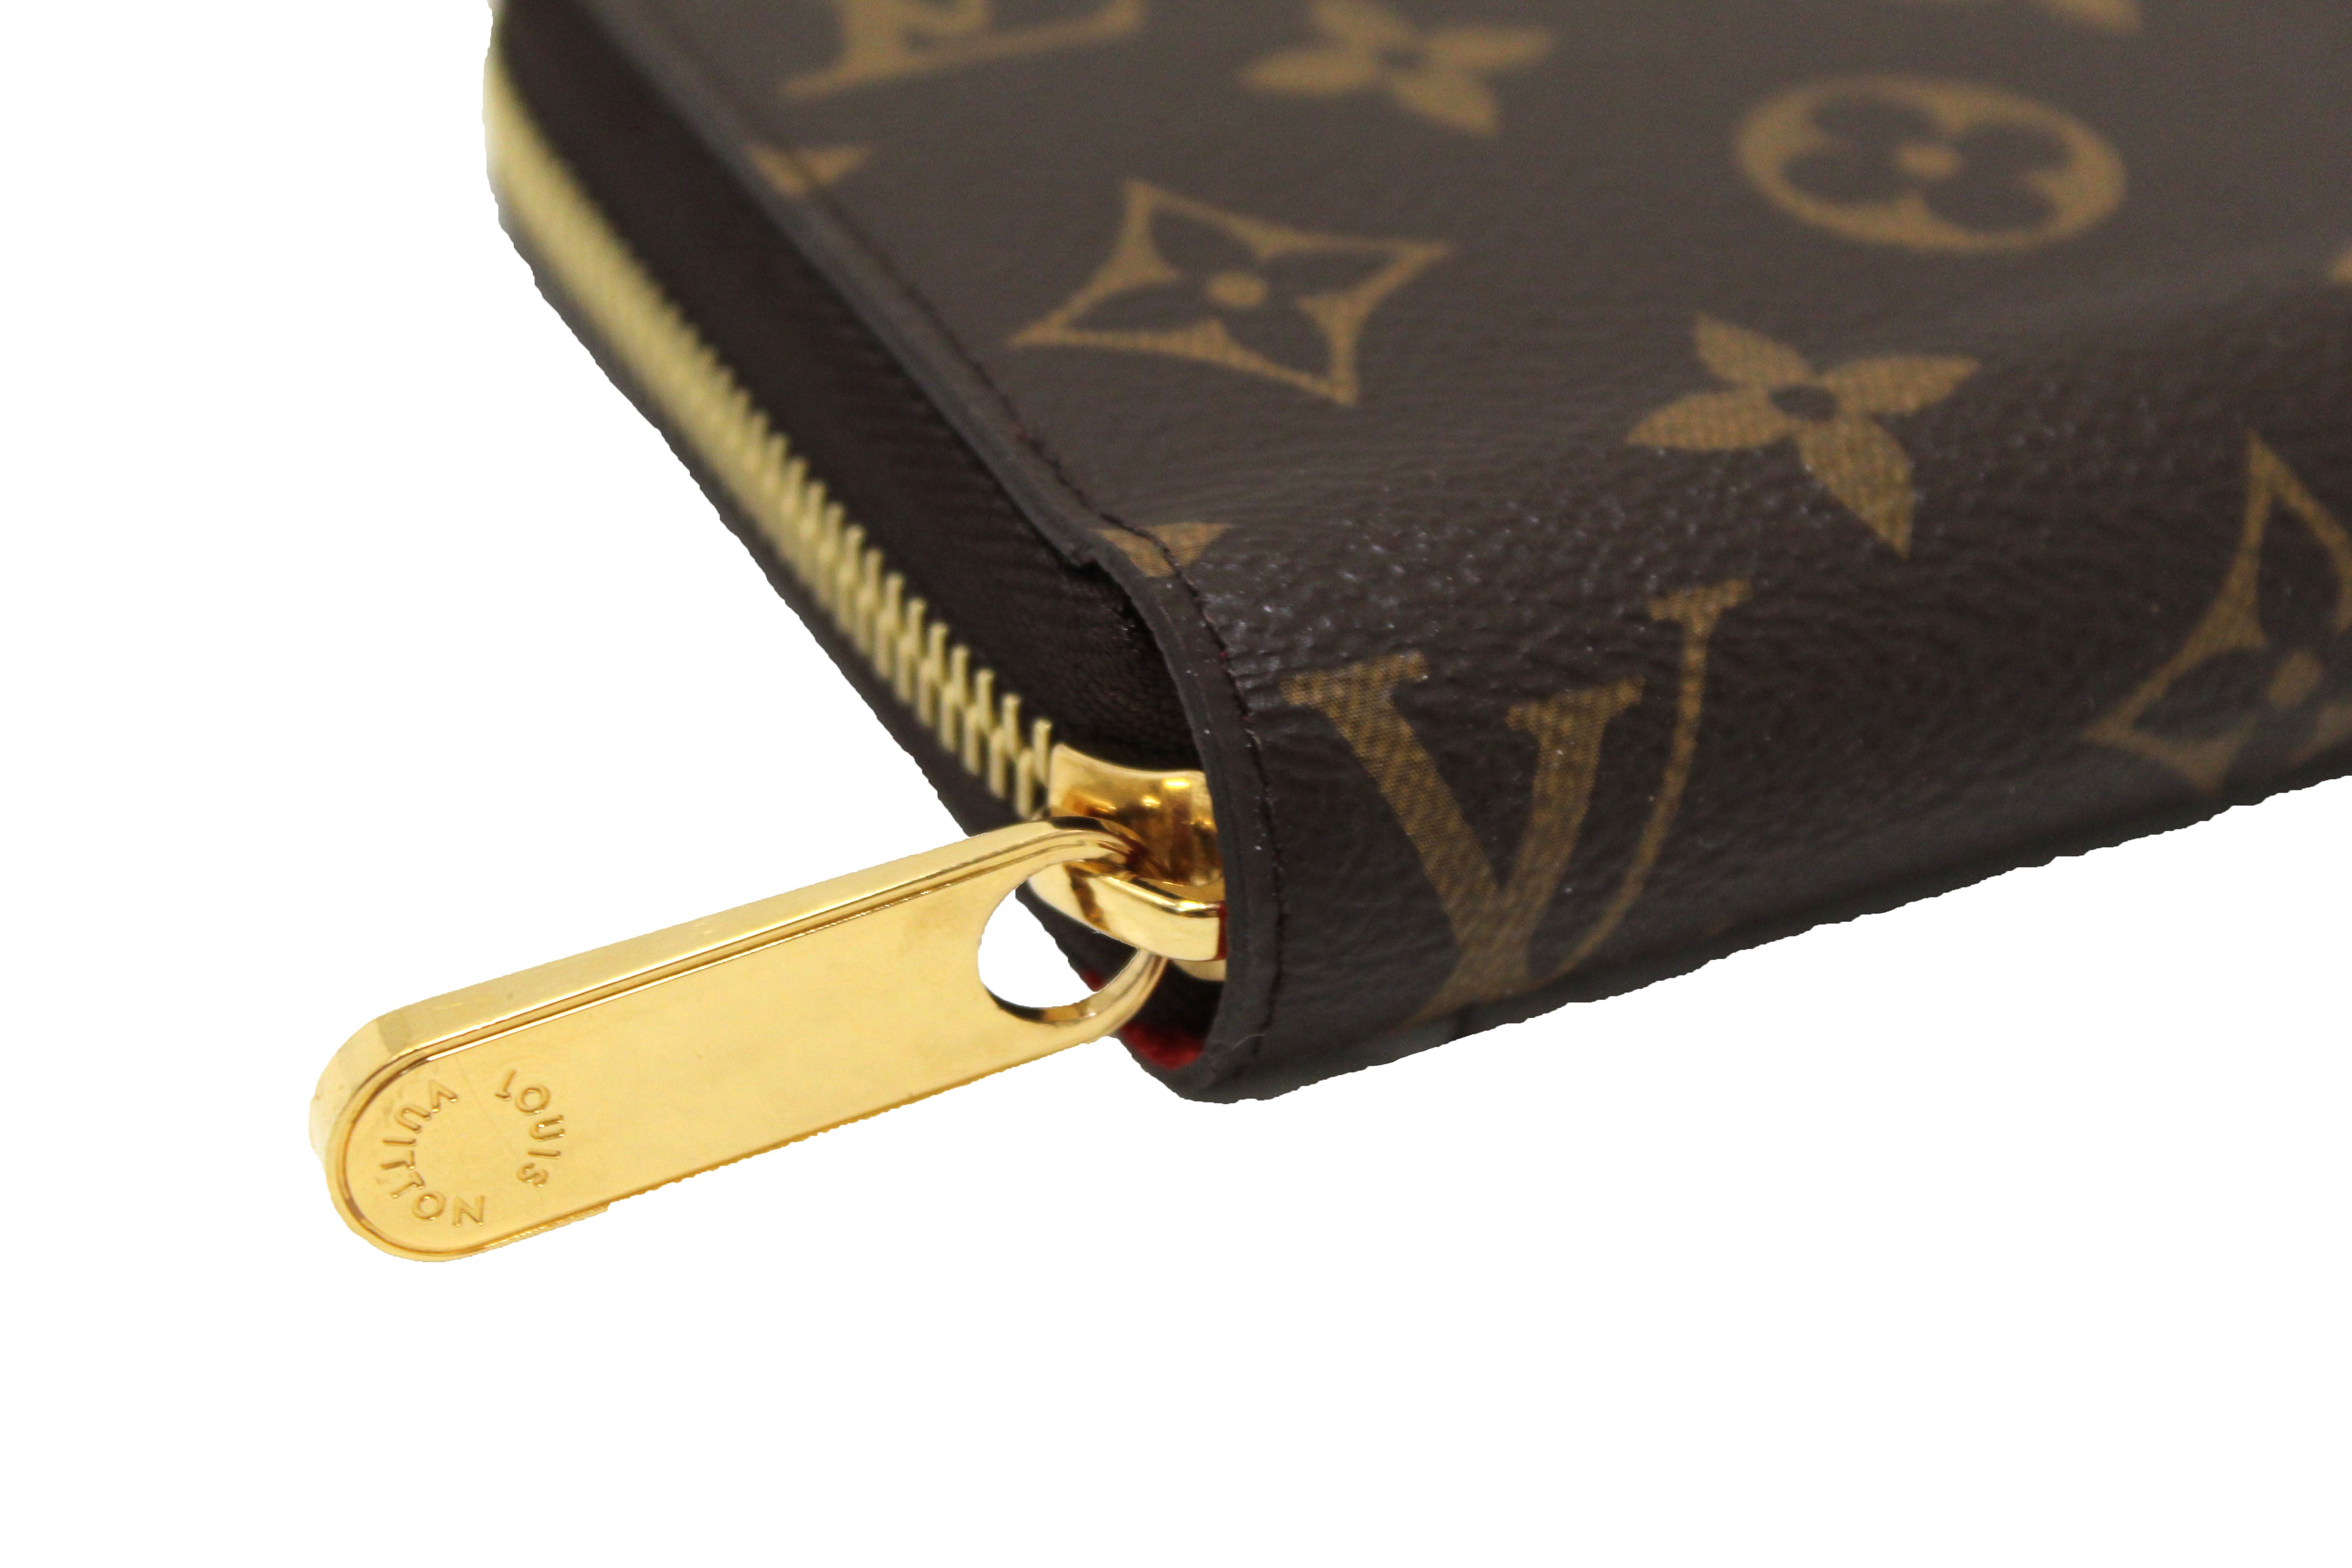 Louis Vuitton wallet zippy Authentic